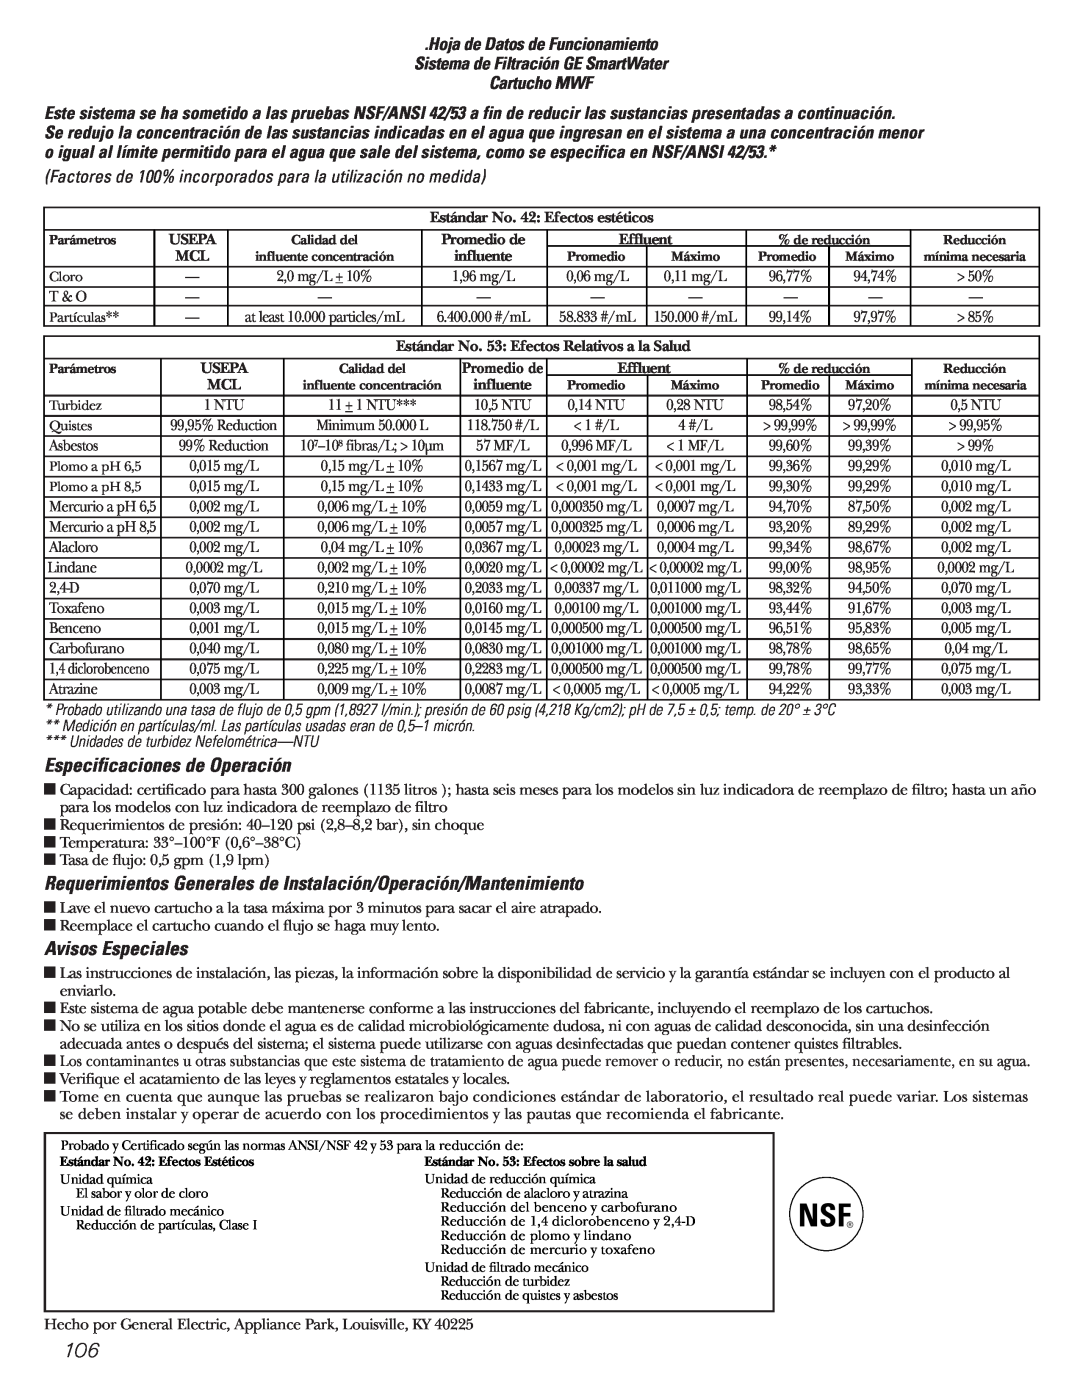 GE Monogram 23 Especificaciones de Operación, Avisos Especiales, Unidades de turbidez Nefelométrica-NTU 